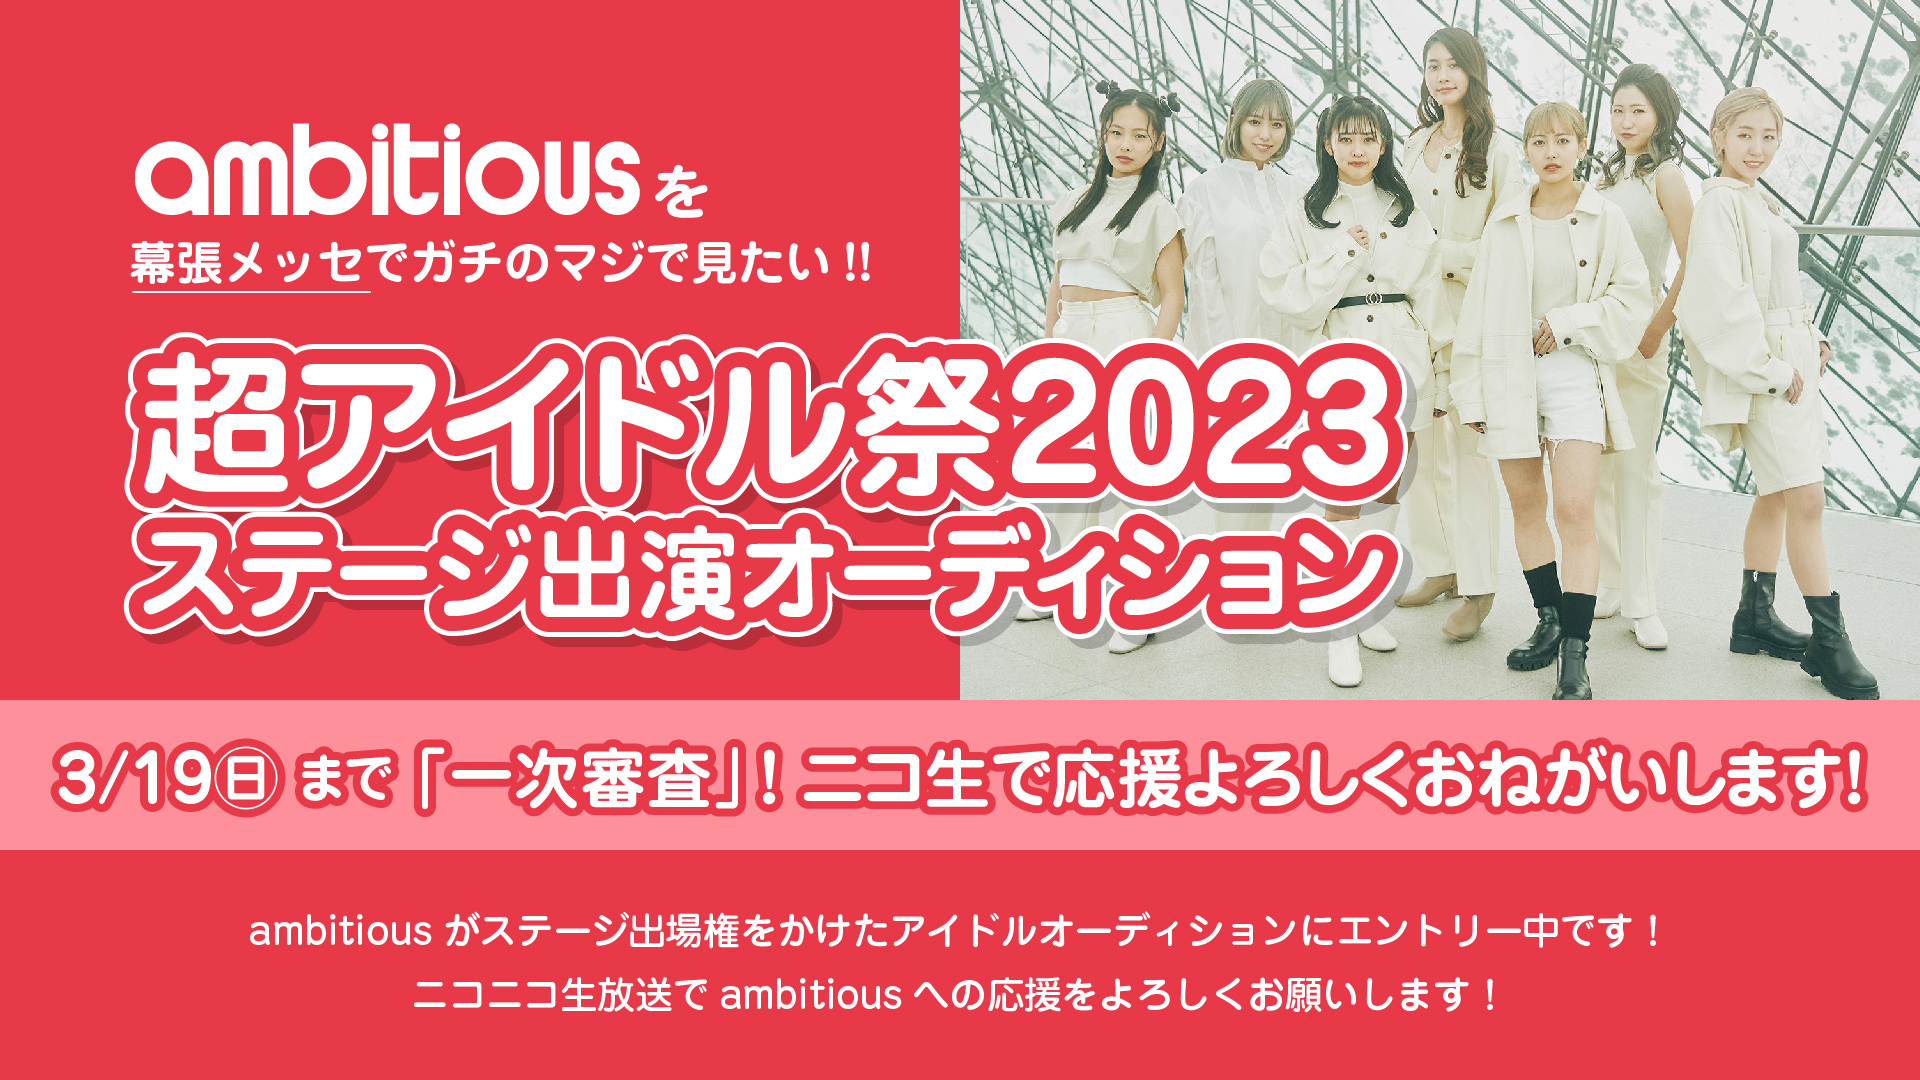 【緊急】｢超アイドル祭2023｣の出演オーディションにambitiousがエントリー中です!!